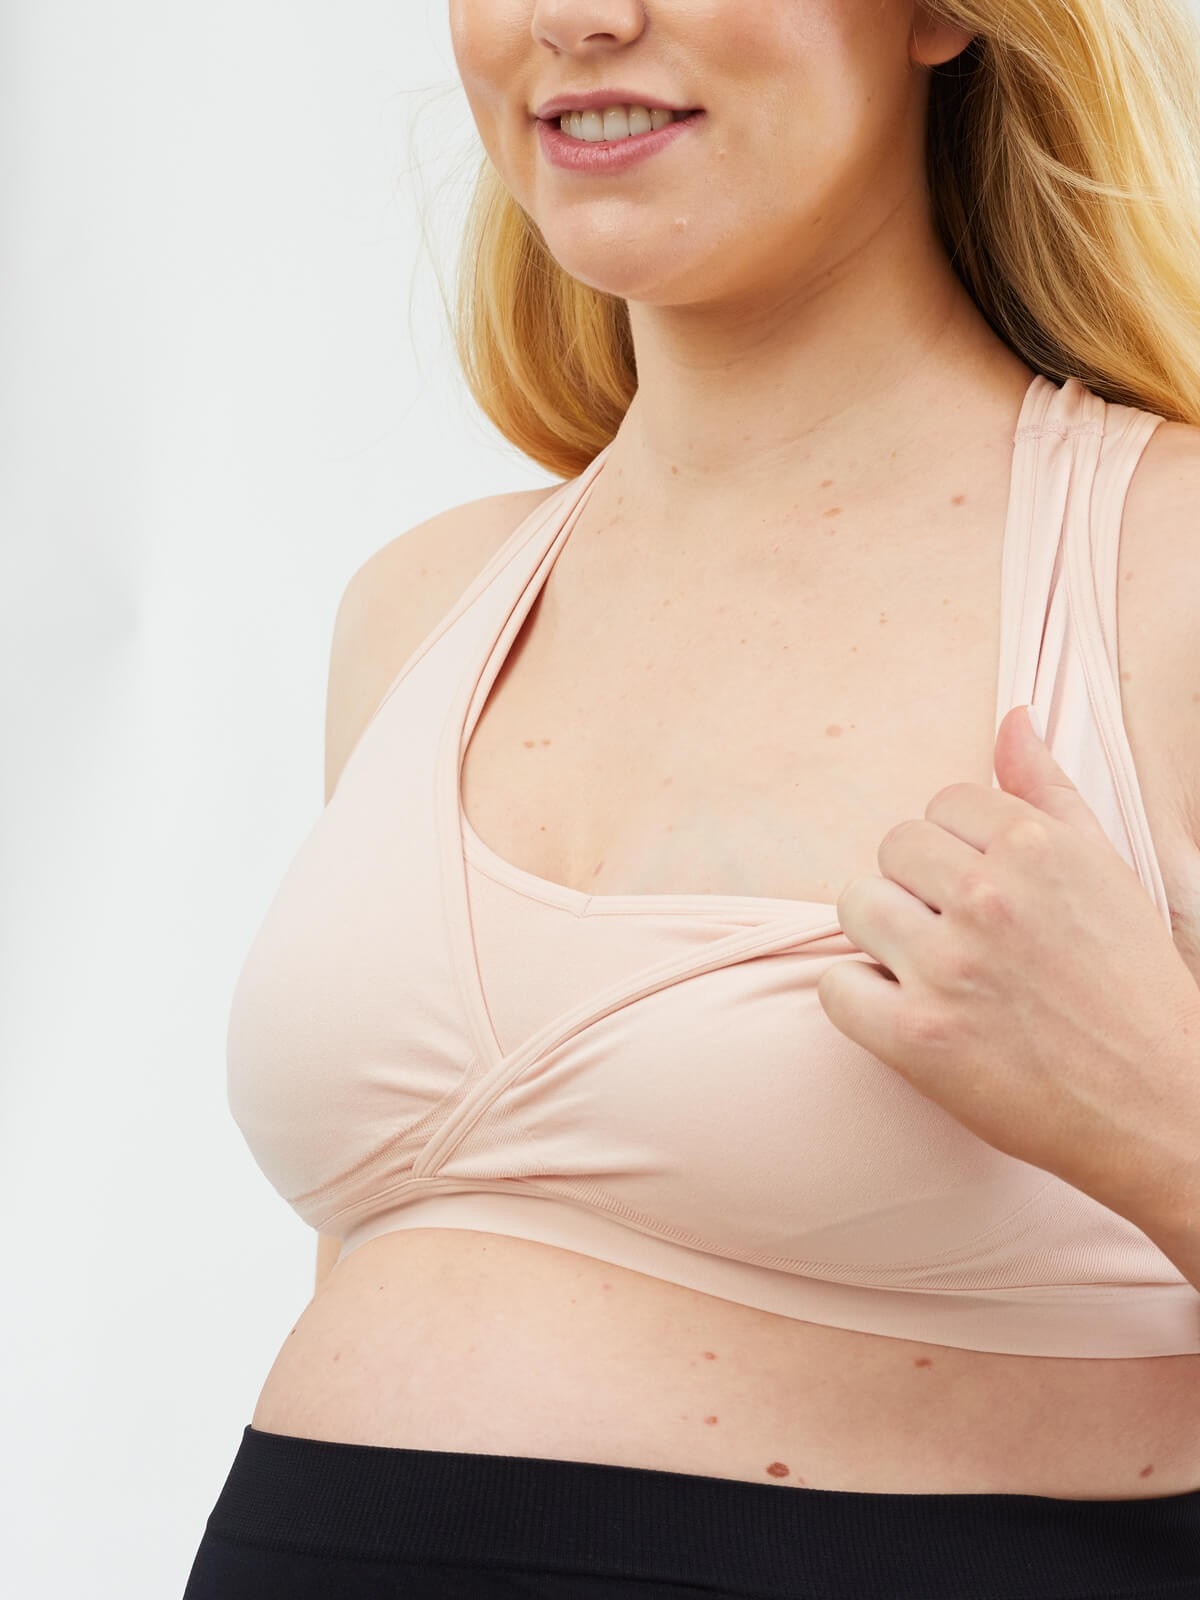 Medela Breastfeeding and Expressing Bra 3 in 1 Black – FarmatoGo